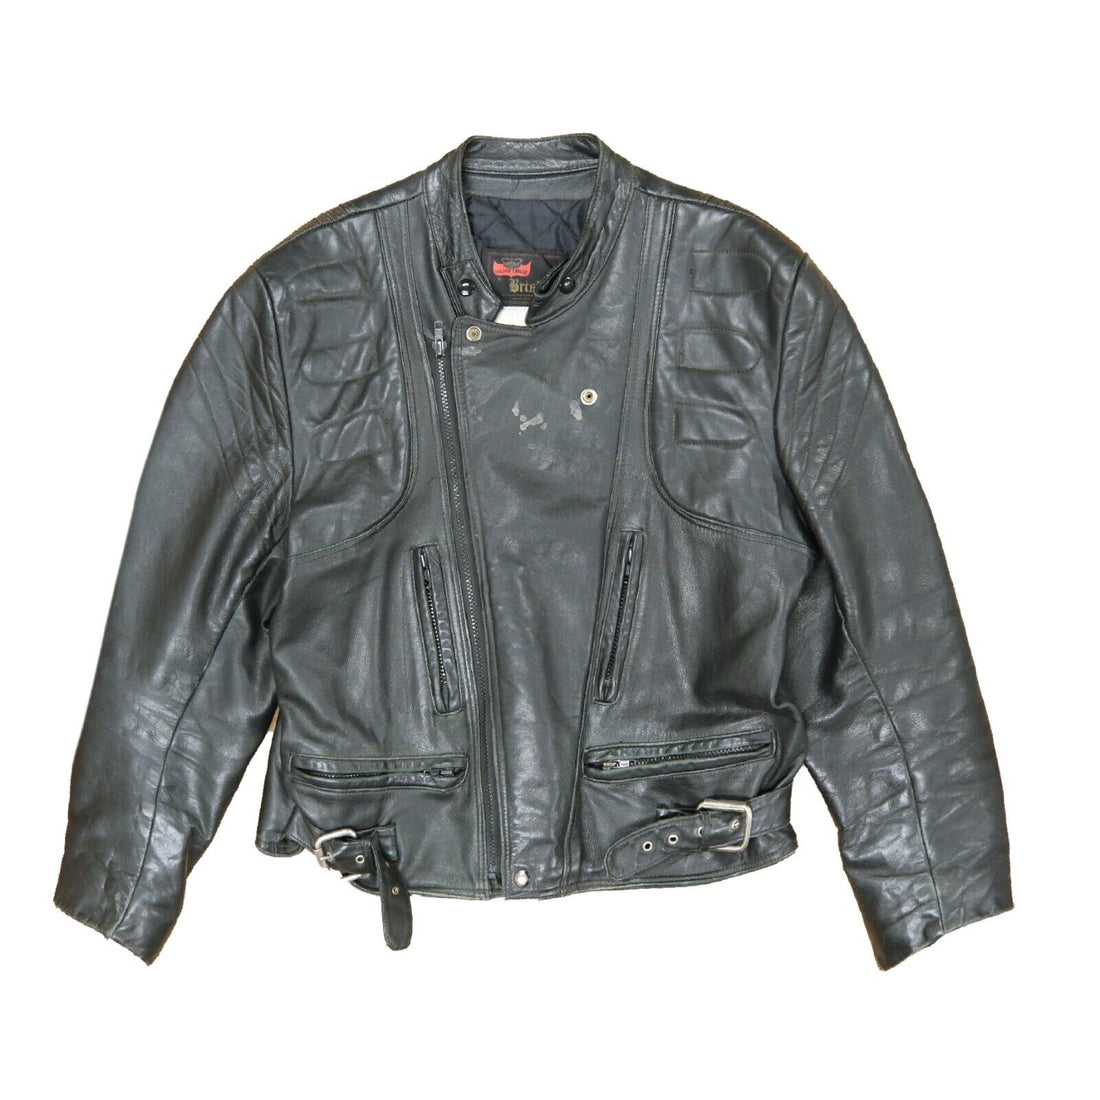 Vintage Bristol Cafe Racer Motorcycle Leather Jacket Size Large Black